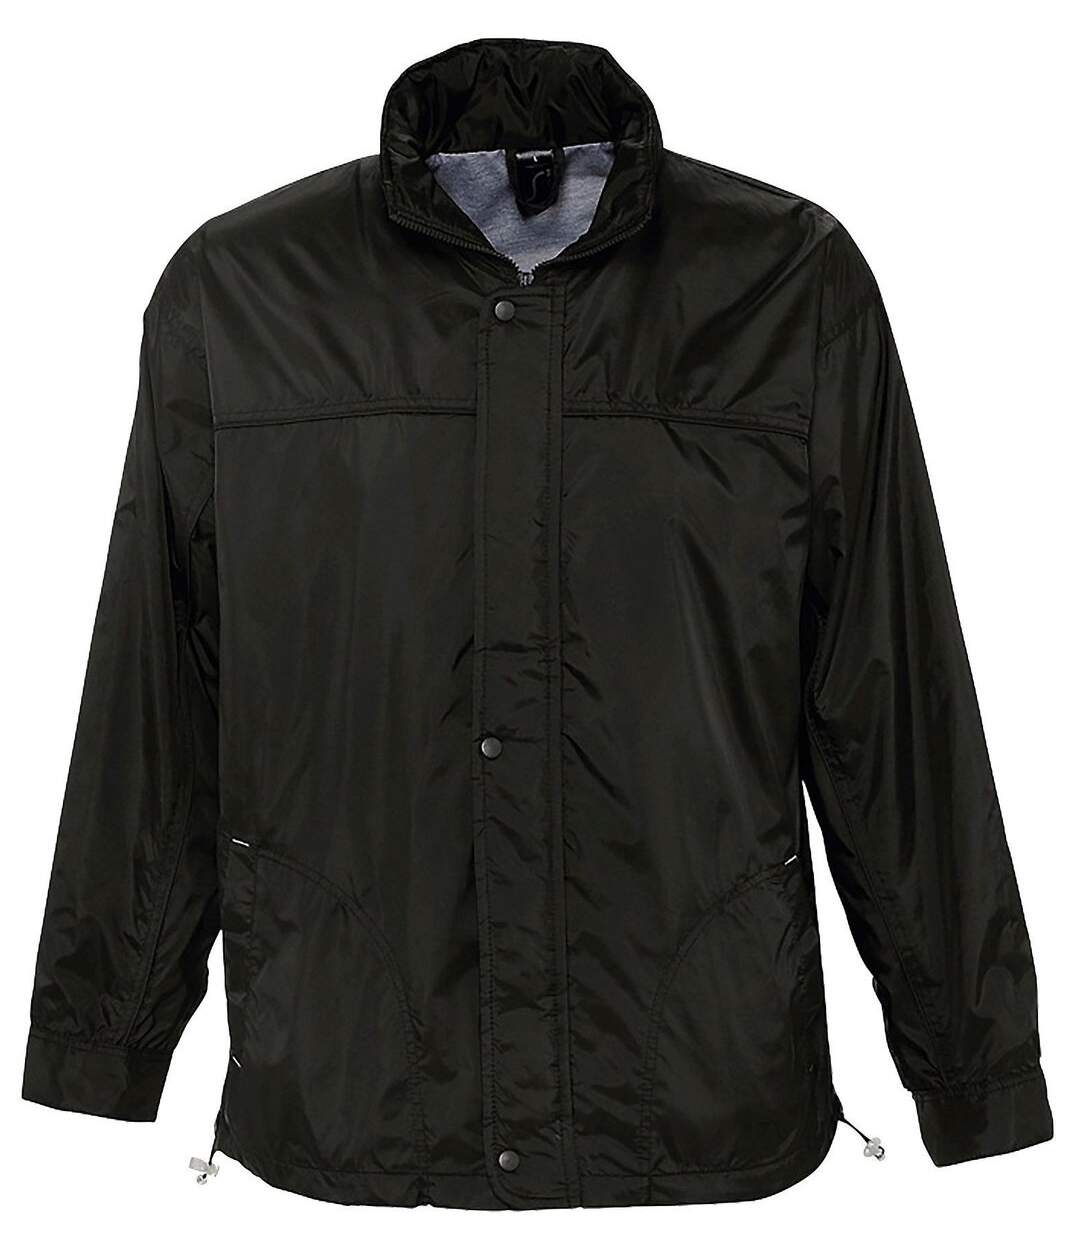 Veste coupe-vent imperméable doublé jersey - 46000 - noir - mixte homme femme